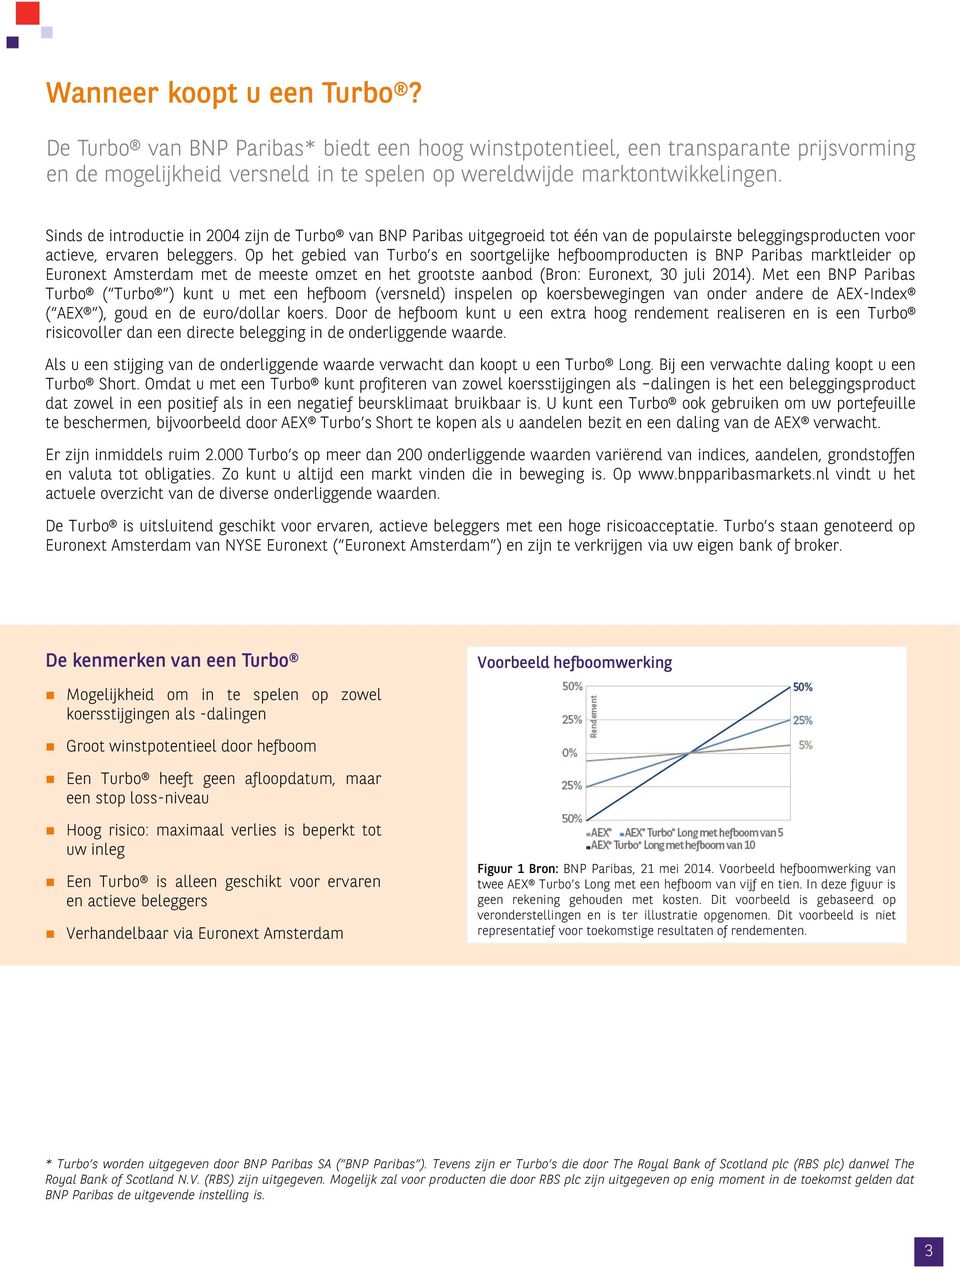 Op het gebied van Turbo s en soortgelijke hefboomproducten is BNP Paribas marktleider op Euronext Amsterdam met de meeste omzet en het grootste aanbod (Bron: Euronext, 30 juli 2014).